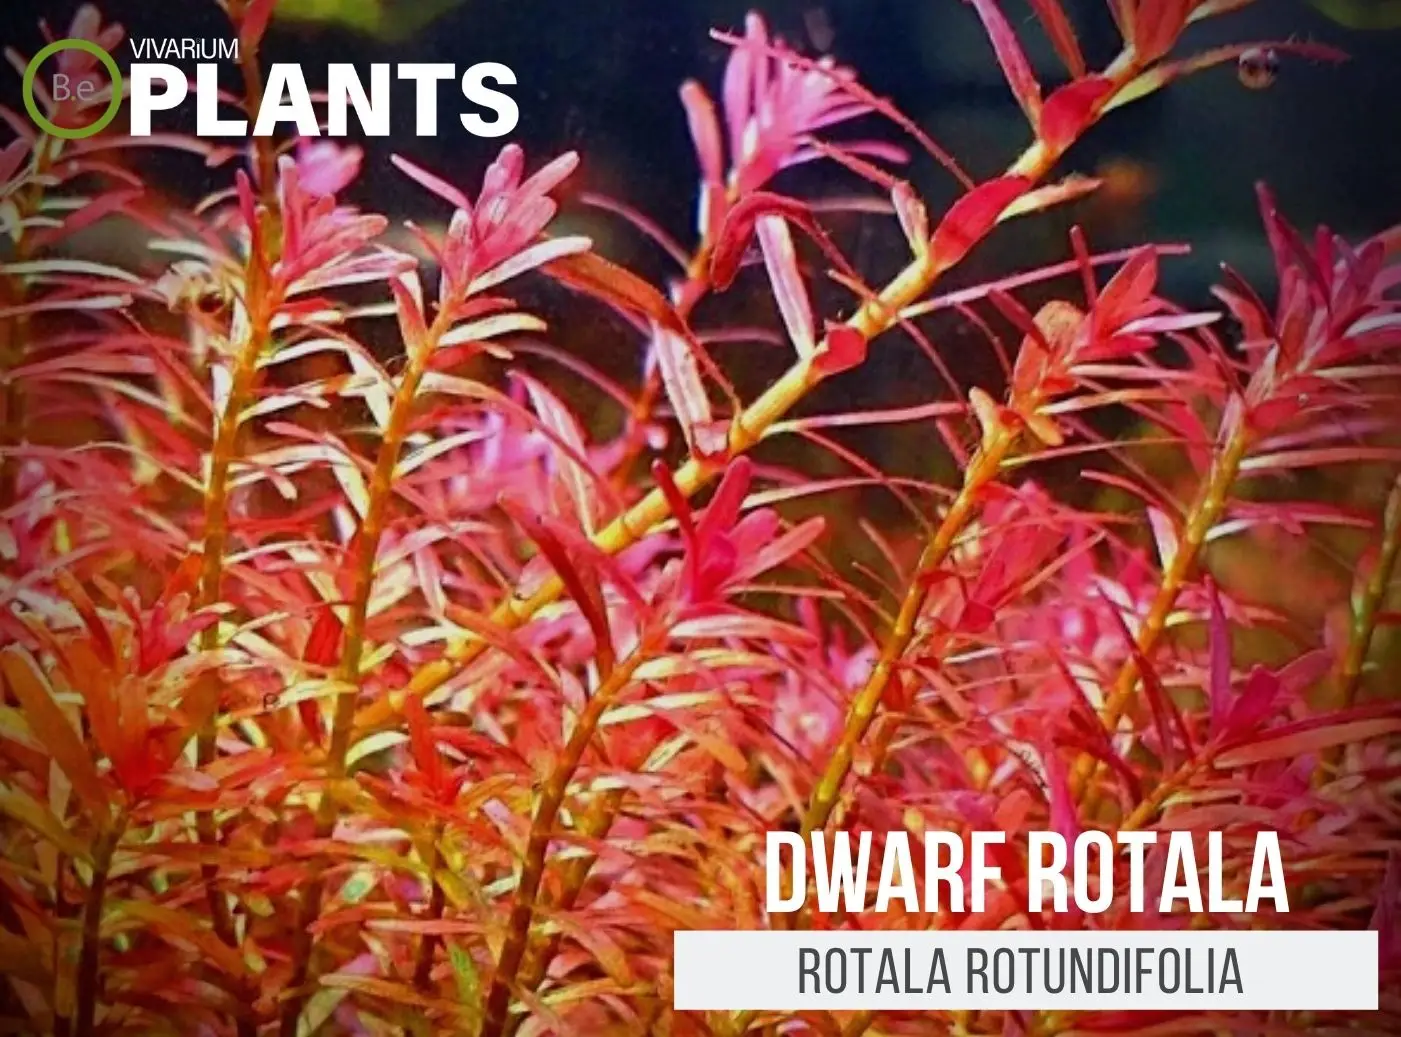 Rotala rotundifolia "Dwarf Rotala" Plant Care Guide